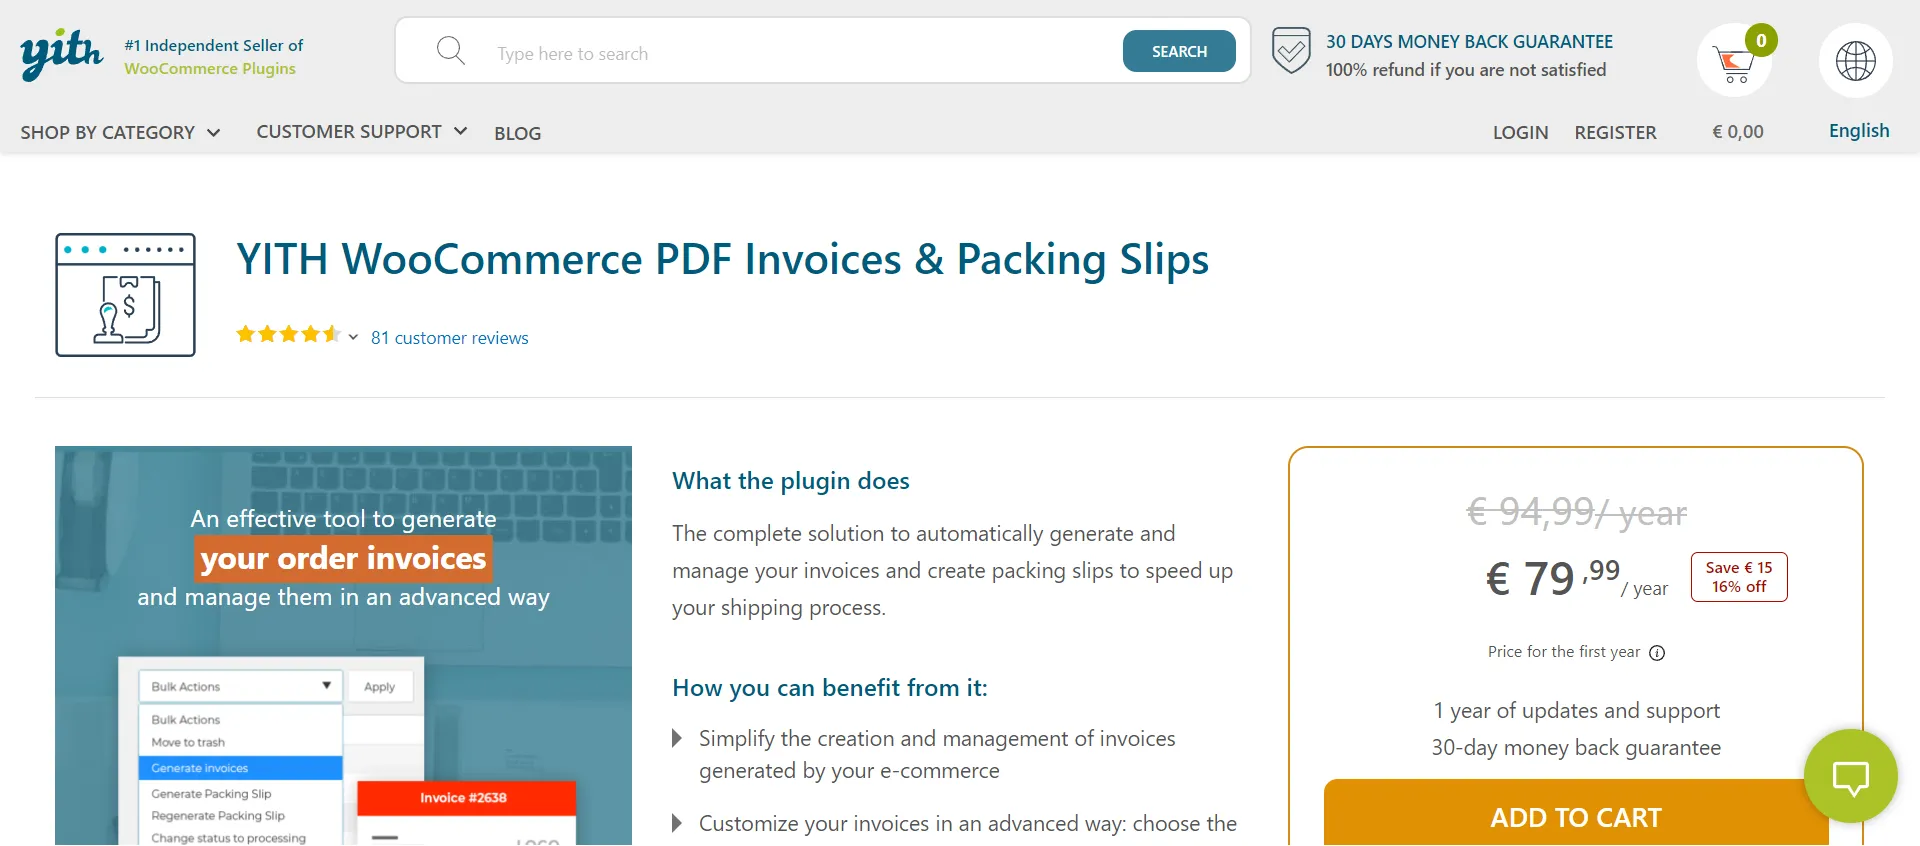 YITH WooCommerce PDF Invoice & Packing Slips